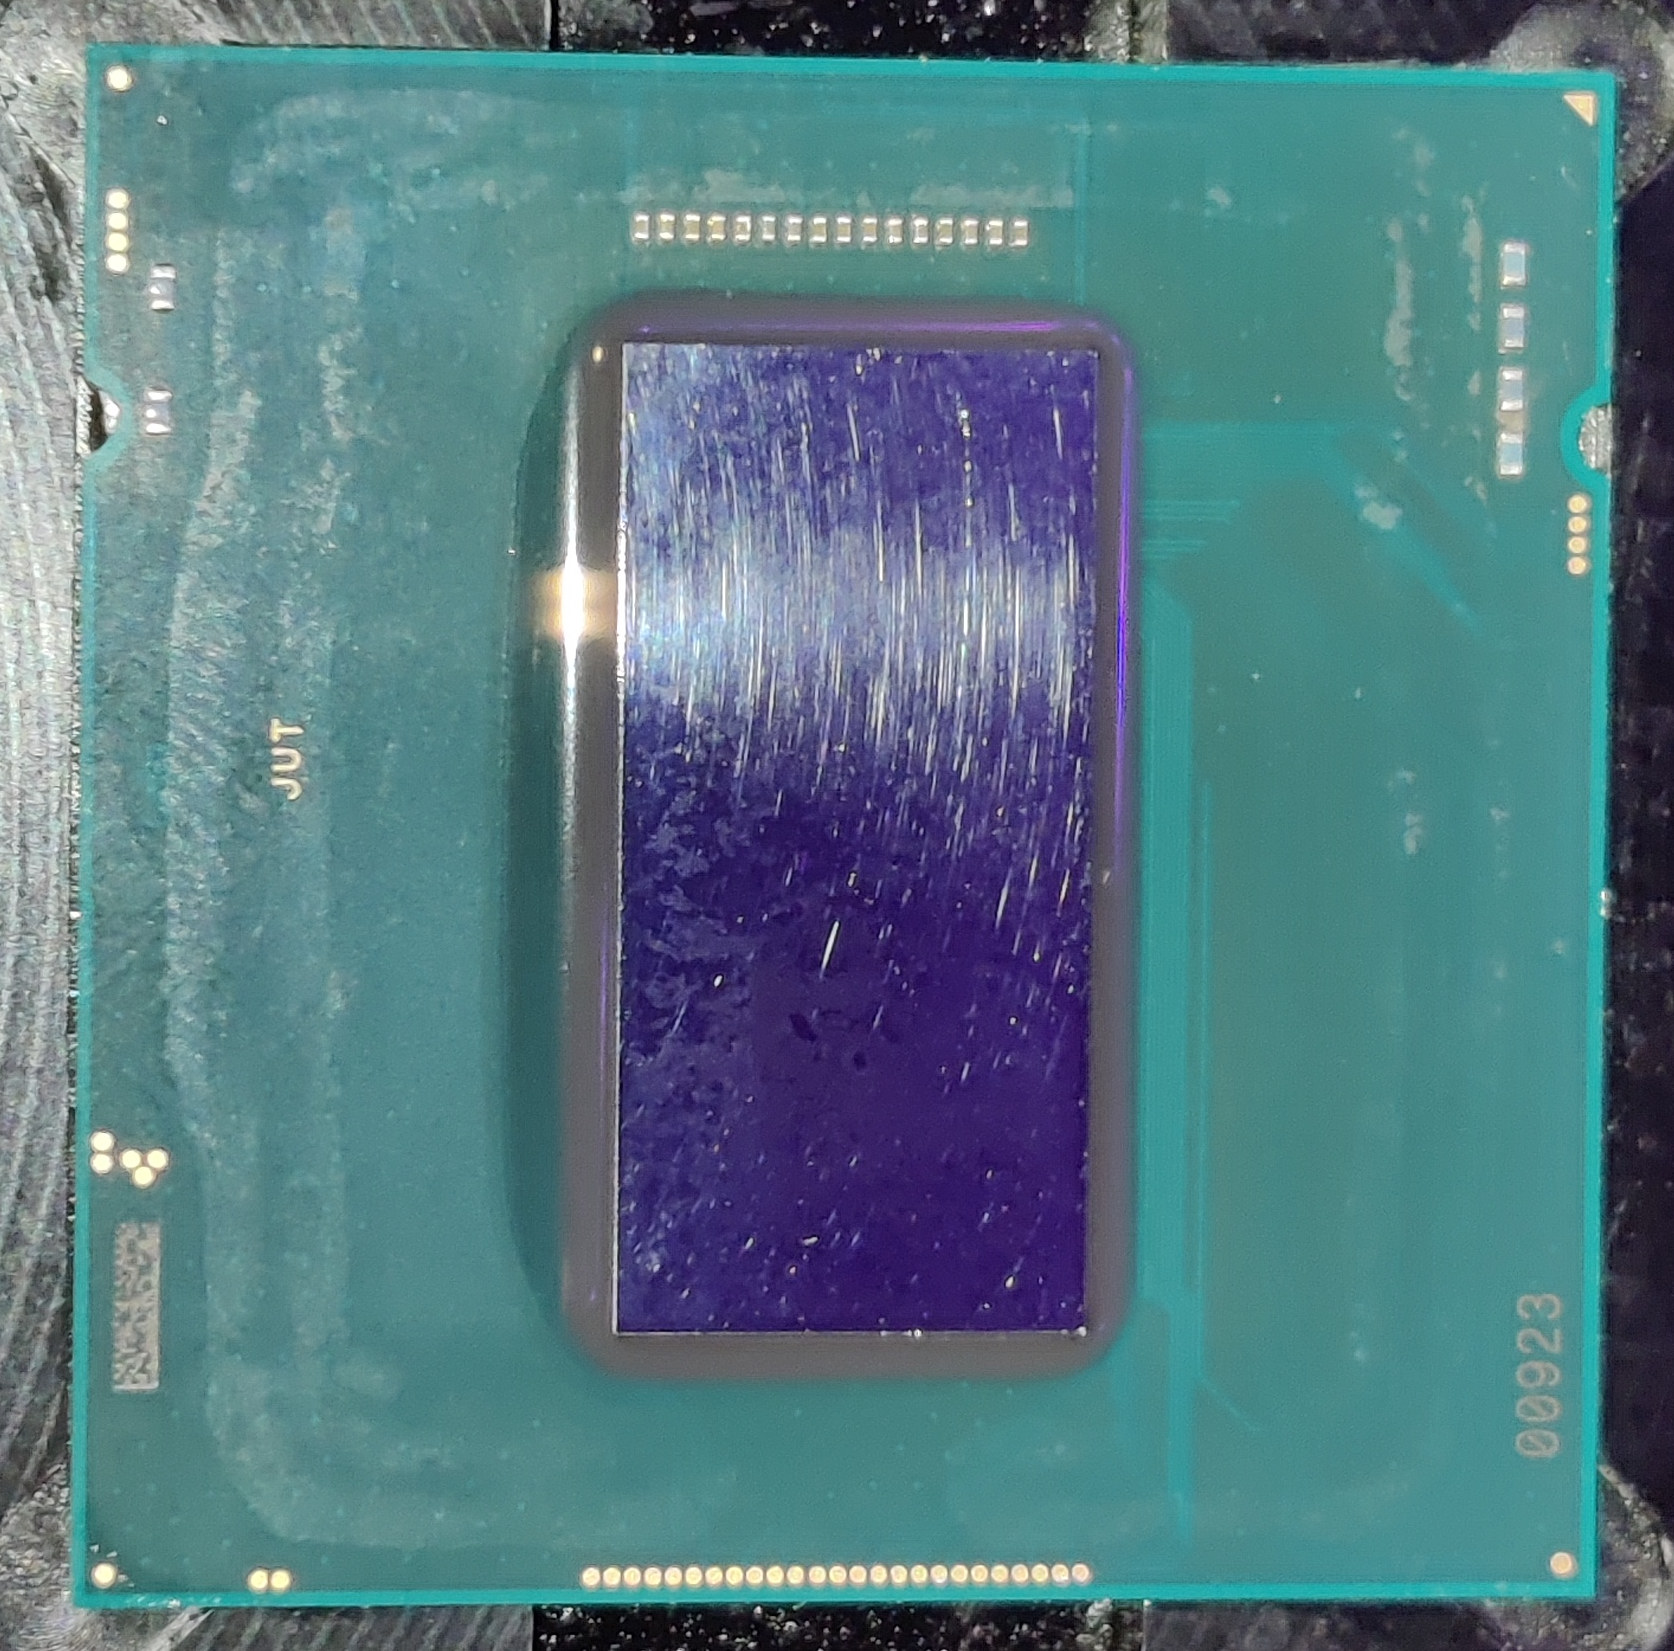 Процессор rocket lake. Intel Core i7-11700k. Rocket Lake Intel процессор. Intel Rocket Lake s 11. Процессор Intel Core i7-11700 Rocket Lake lga1200 Box.